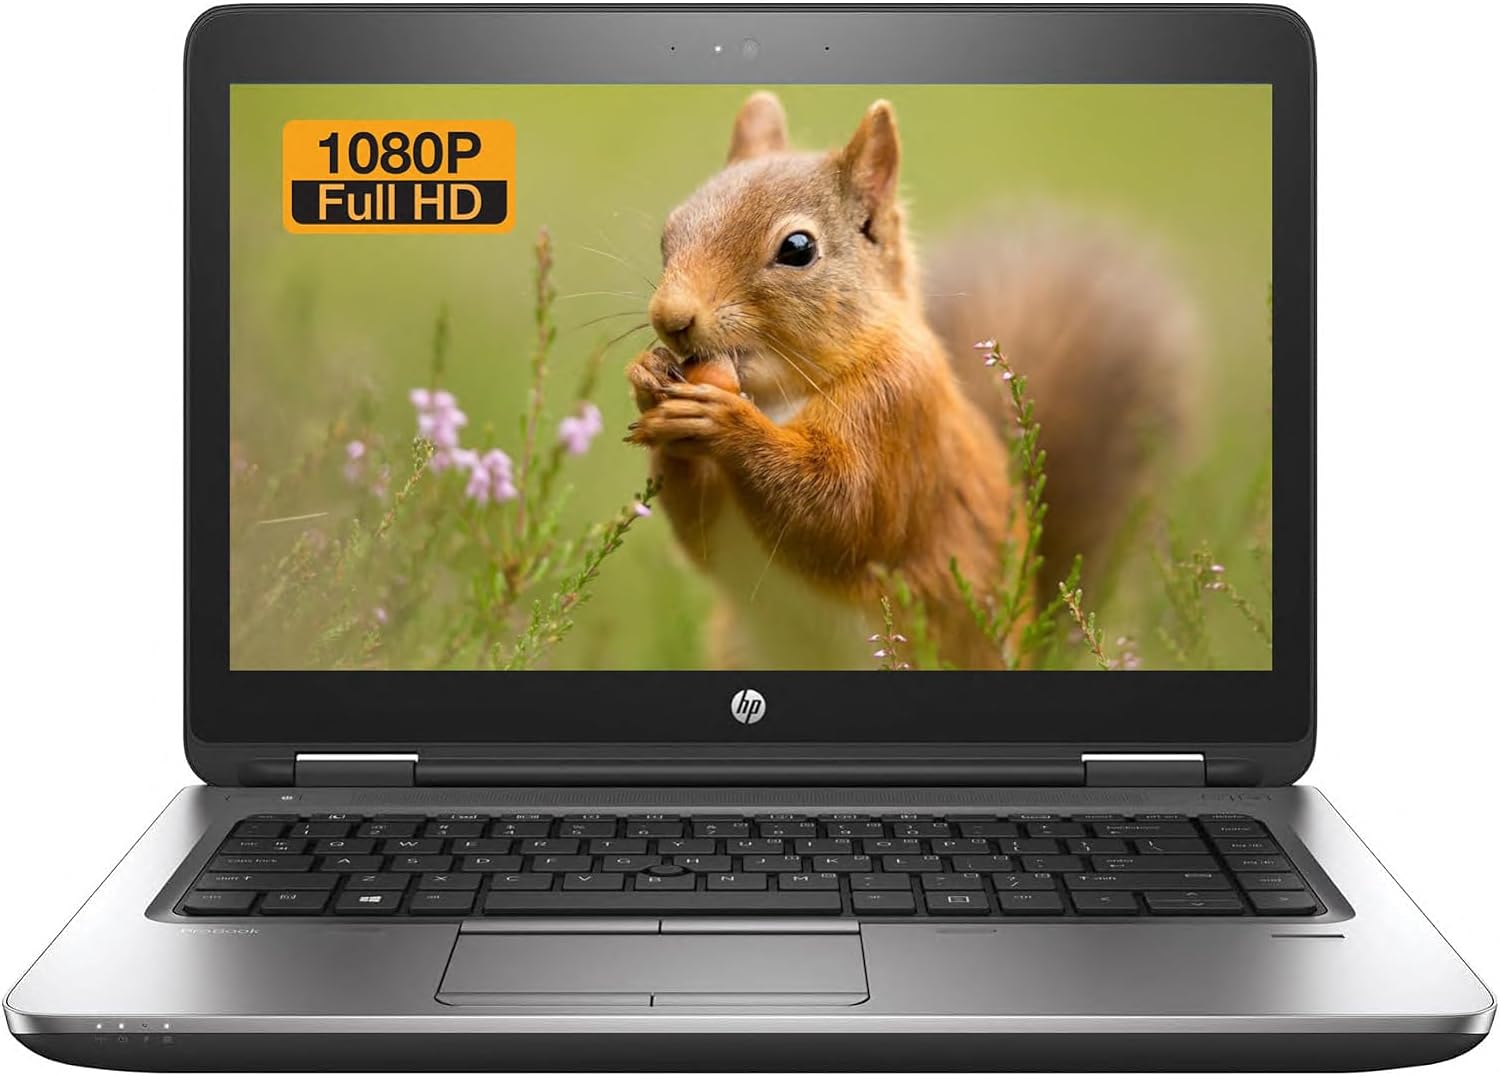 HP Probook 640 G3 Business Laptop, 14